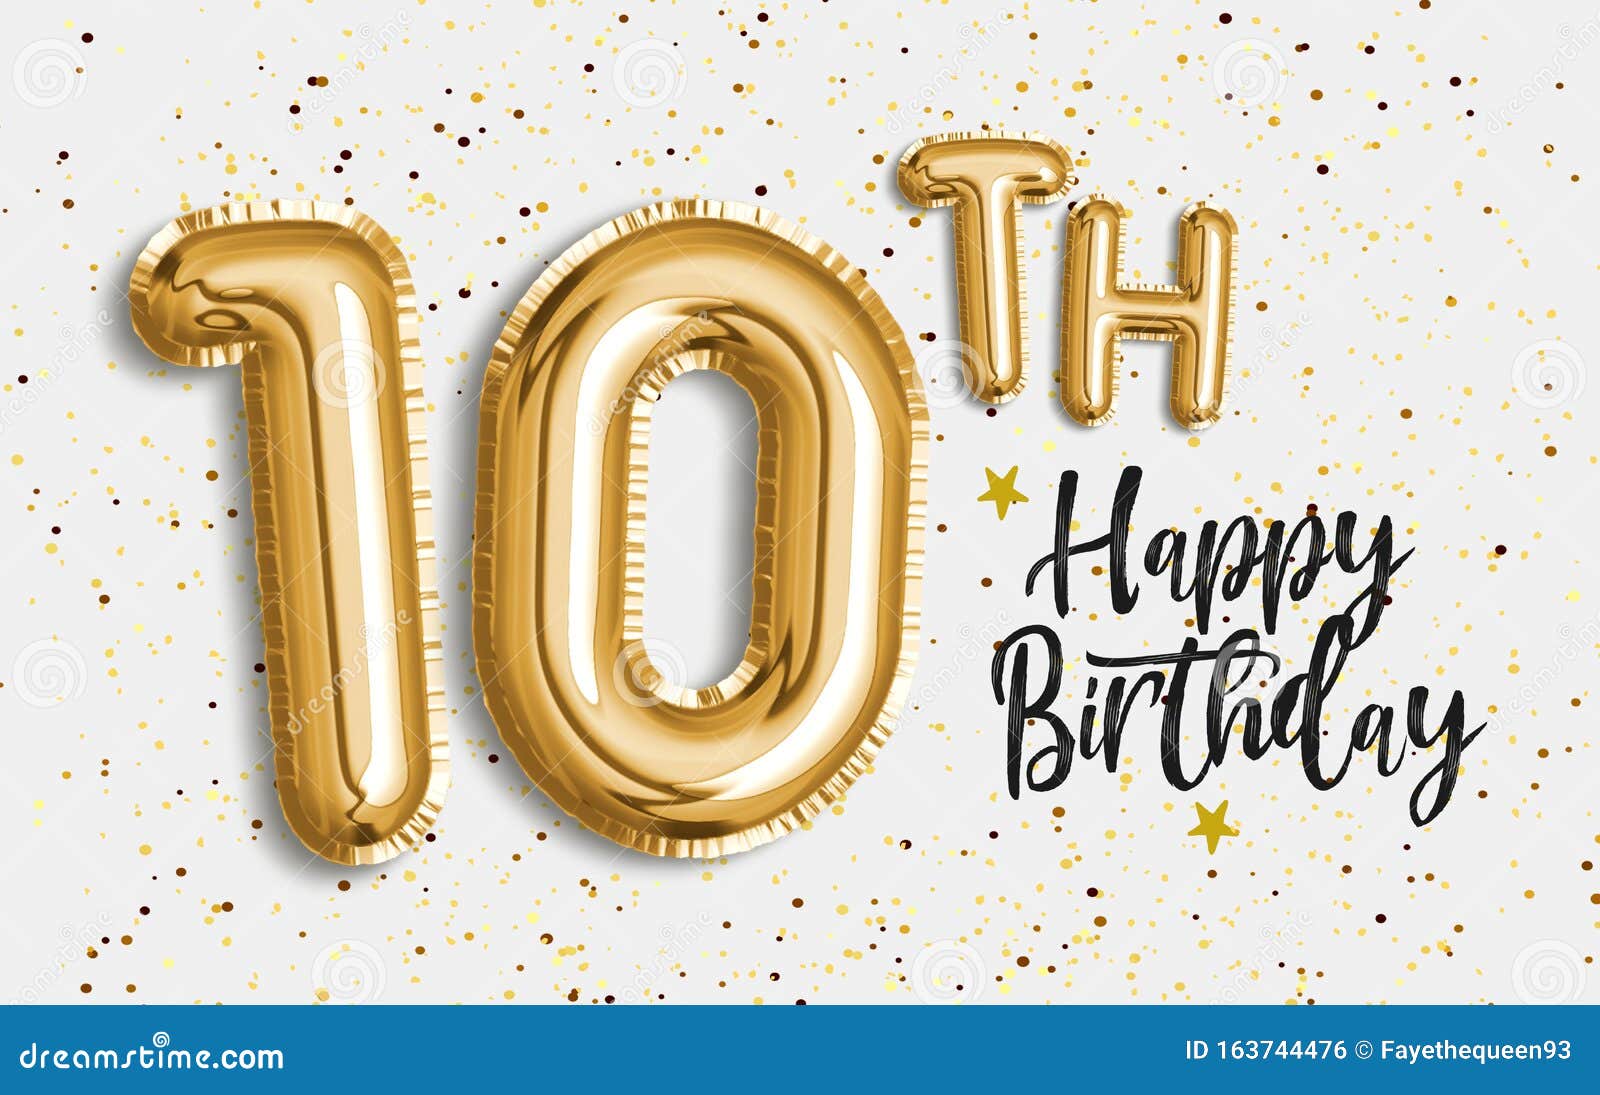 10 Birthday SVG